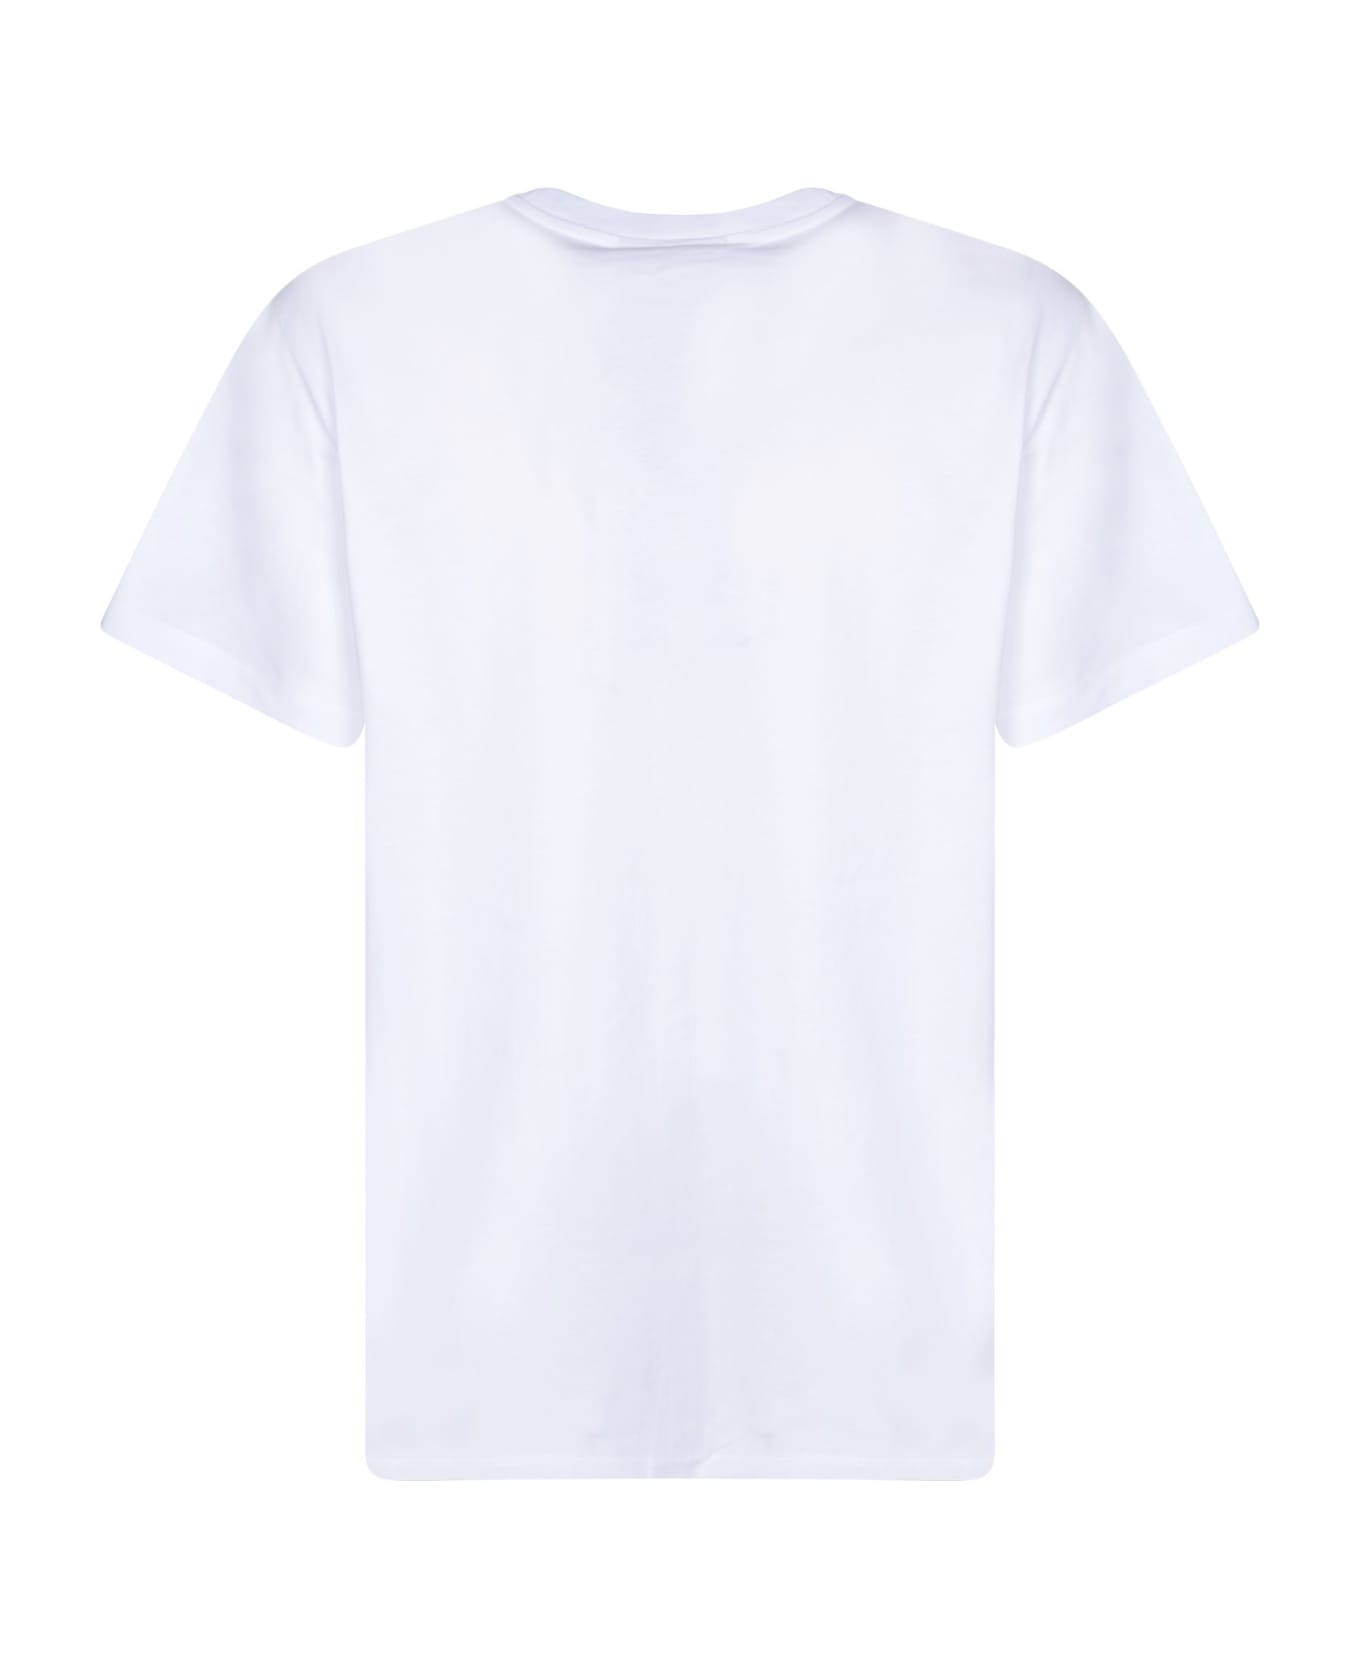 Ganni Print White T-shirt - White